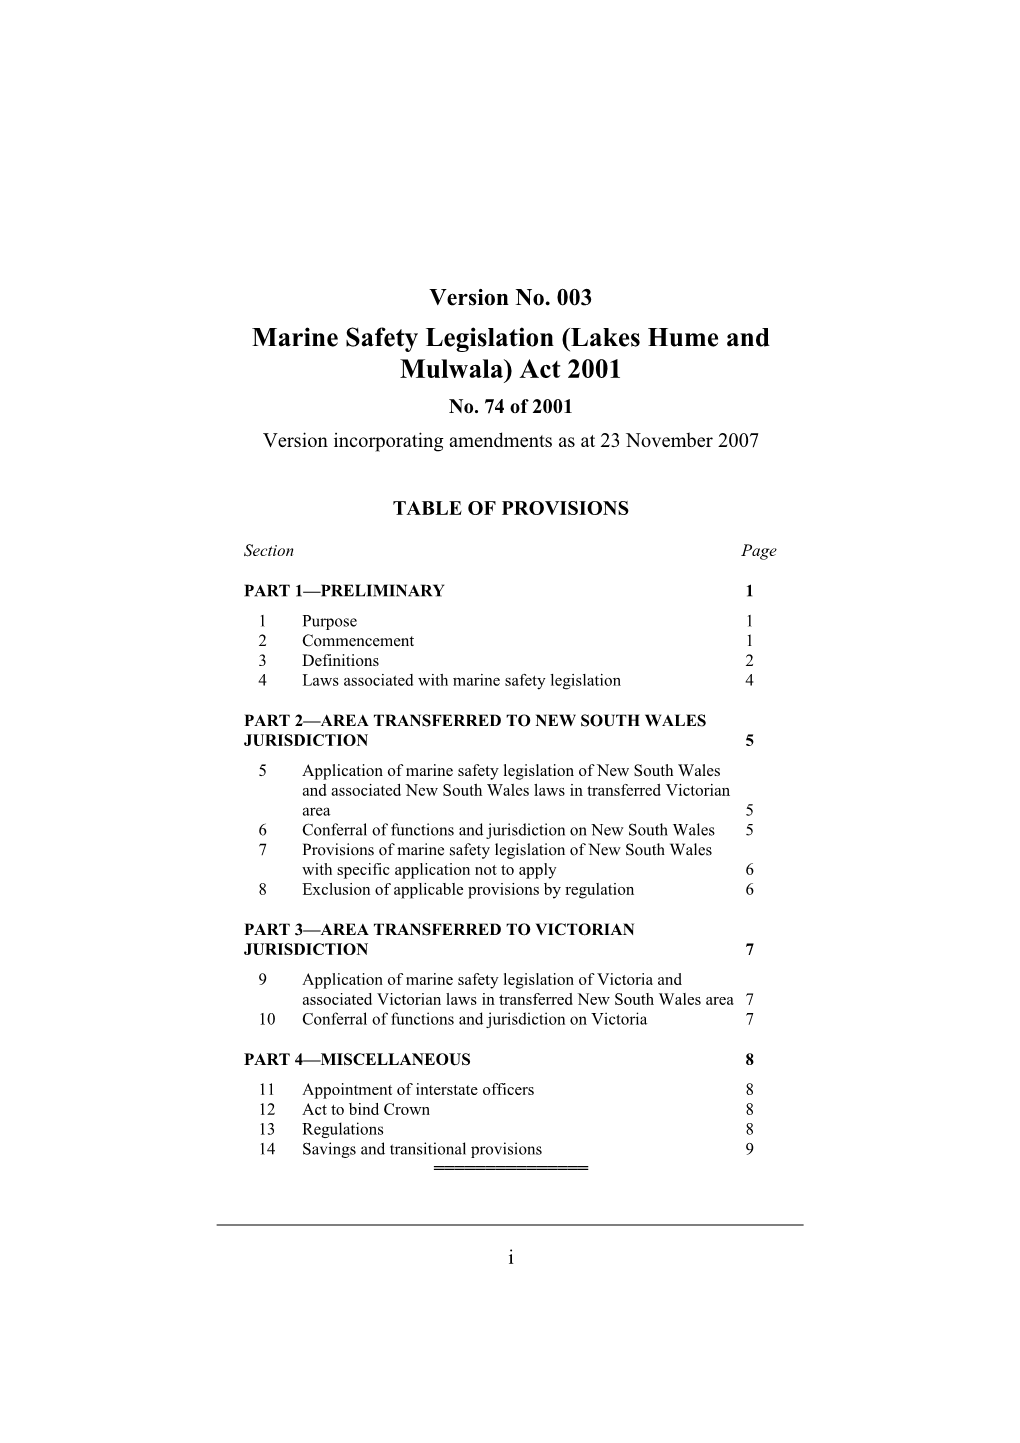 Marine Safety Legislation (Lakes Hume and Mulwala) Act 2001